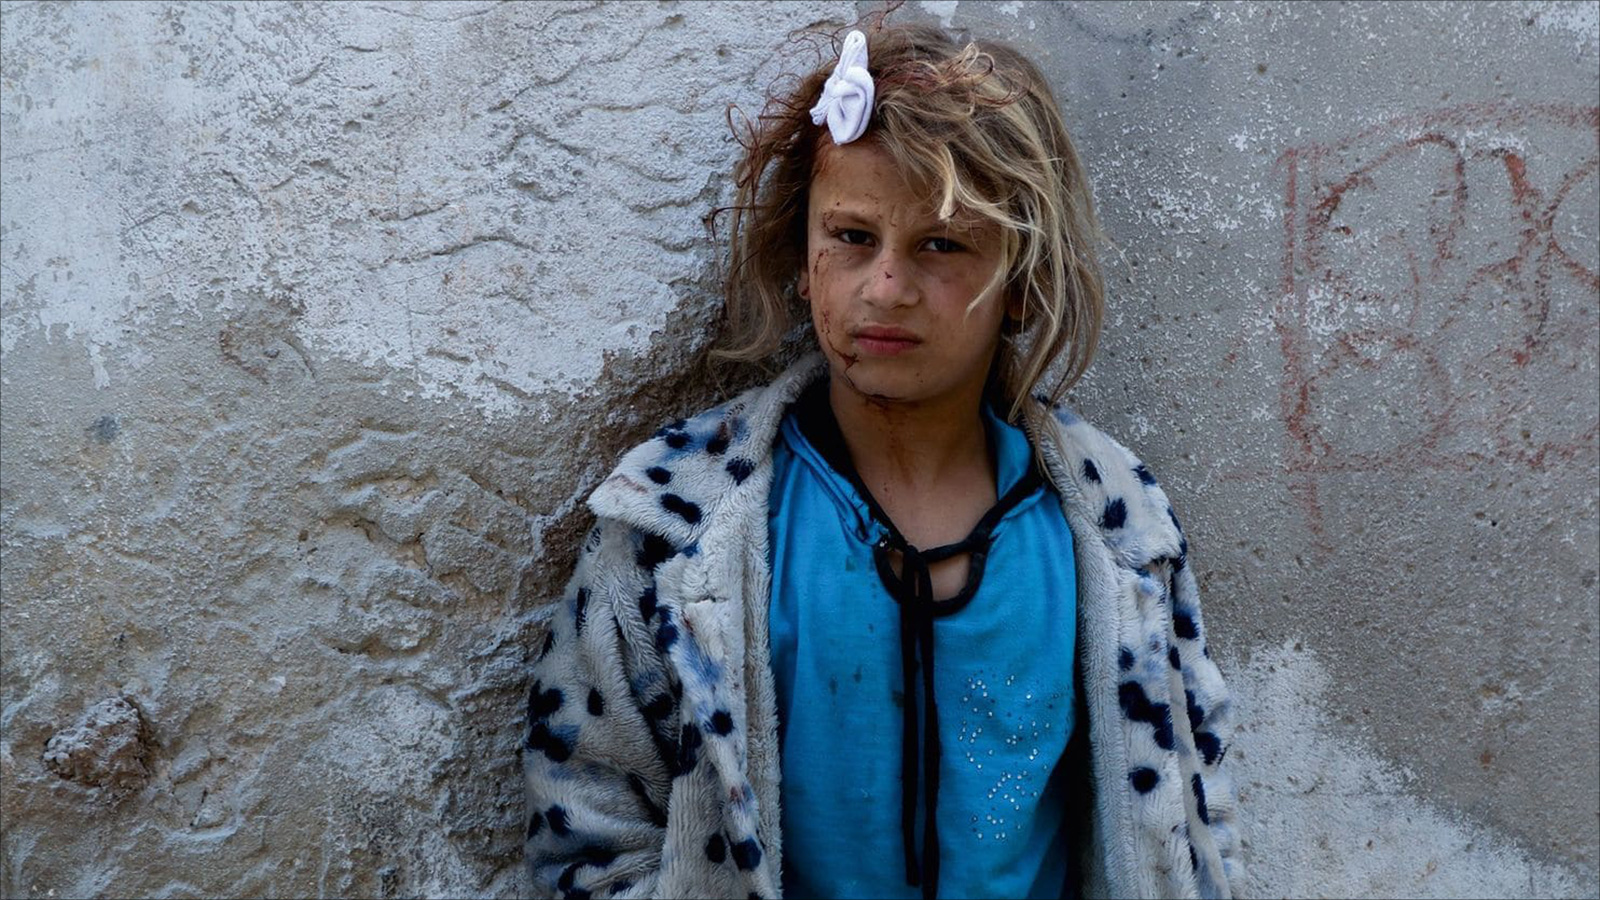 فتاة جريحة تحتمي بحائط قرب موقع في مدينة حلب طاله قصف القوات الحكومية بالبراميل المتفجرة(الصحافة الأميركية)